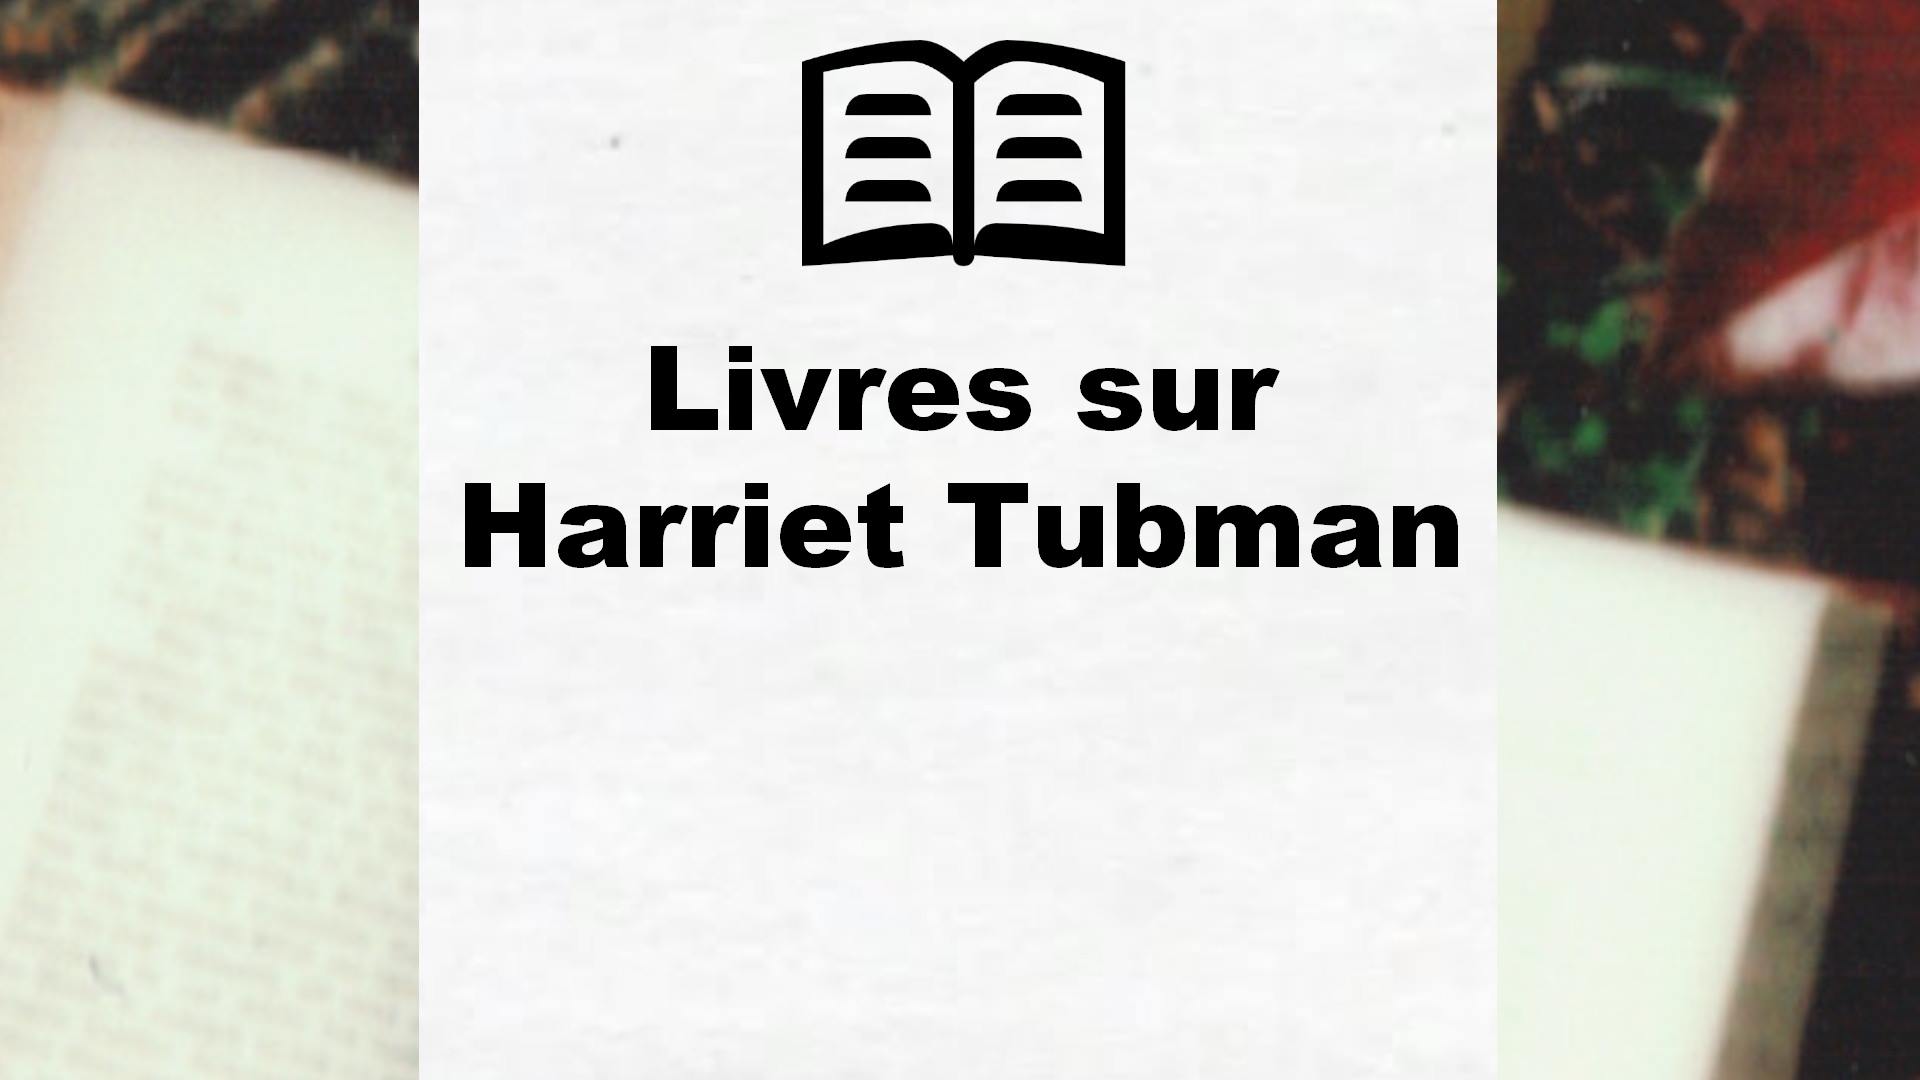 Livres sur Harriet Tubman